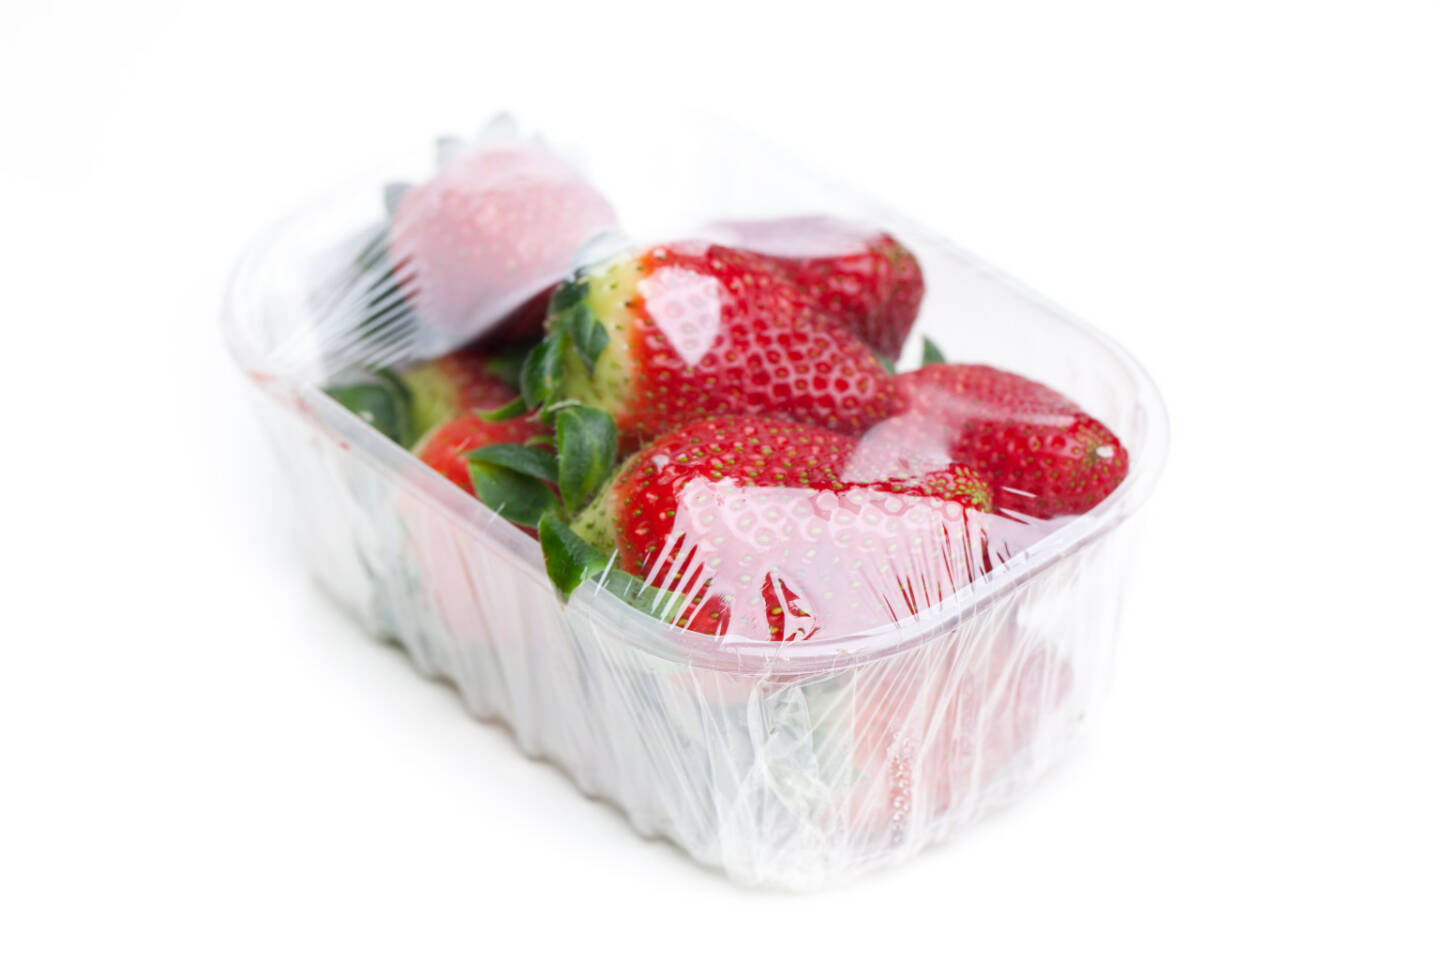 Erdbeeren, Plastikbecher, Folie - http://www.shutterstock.com/de/pic-210167968/stock-photo-strawberries-in-foil-isolated-on-white-background.html